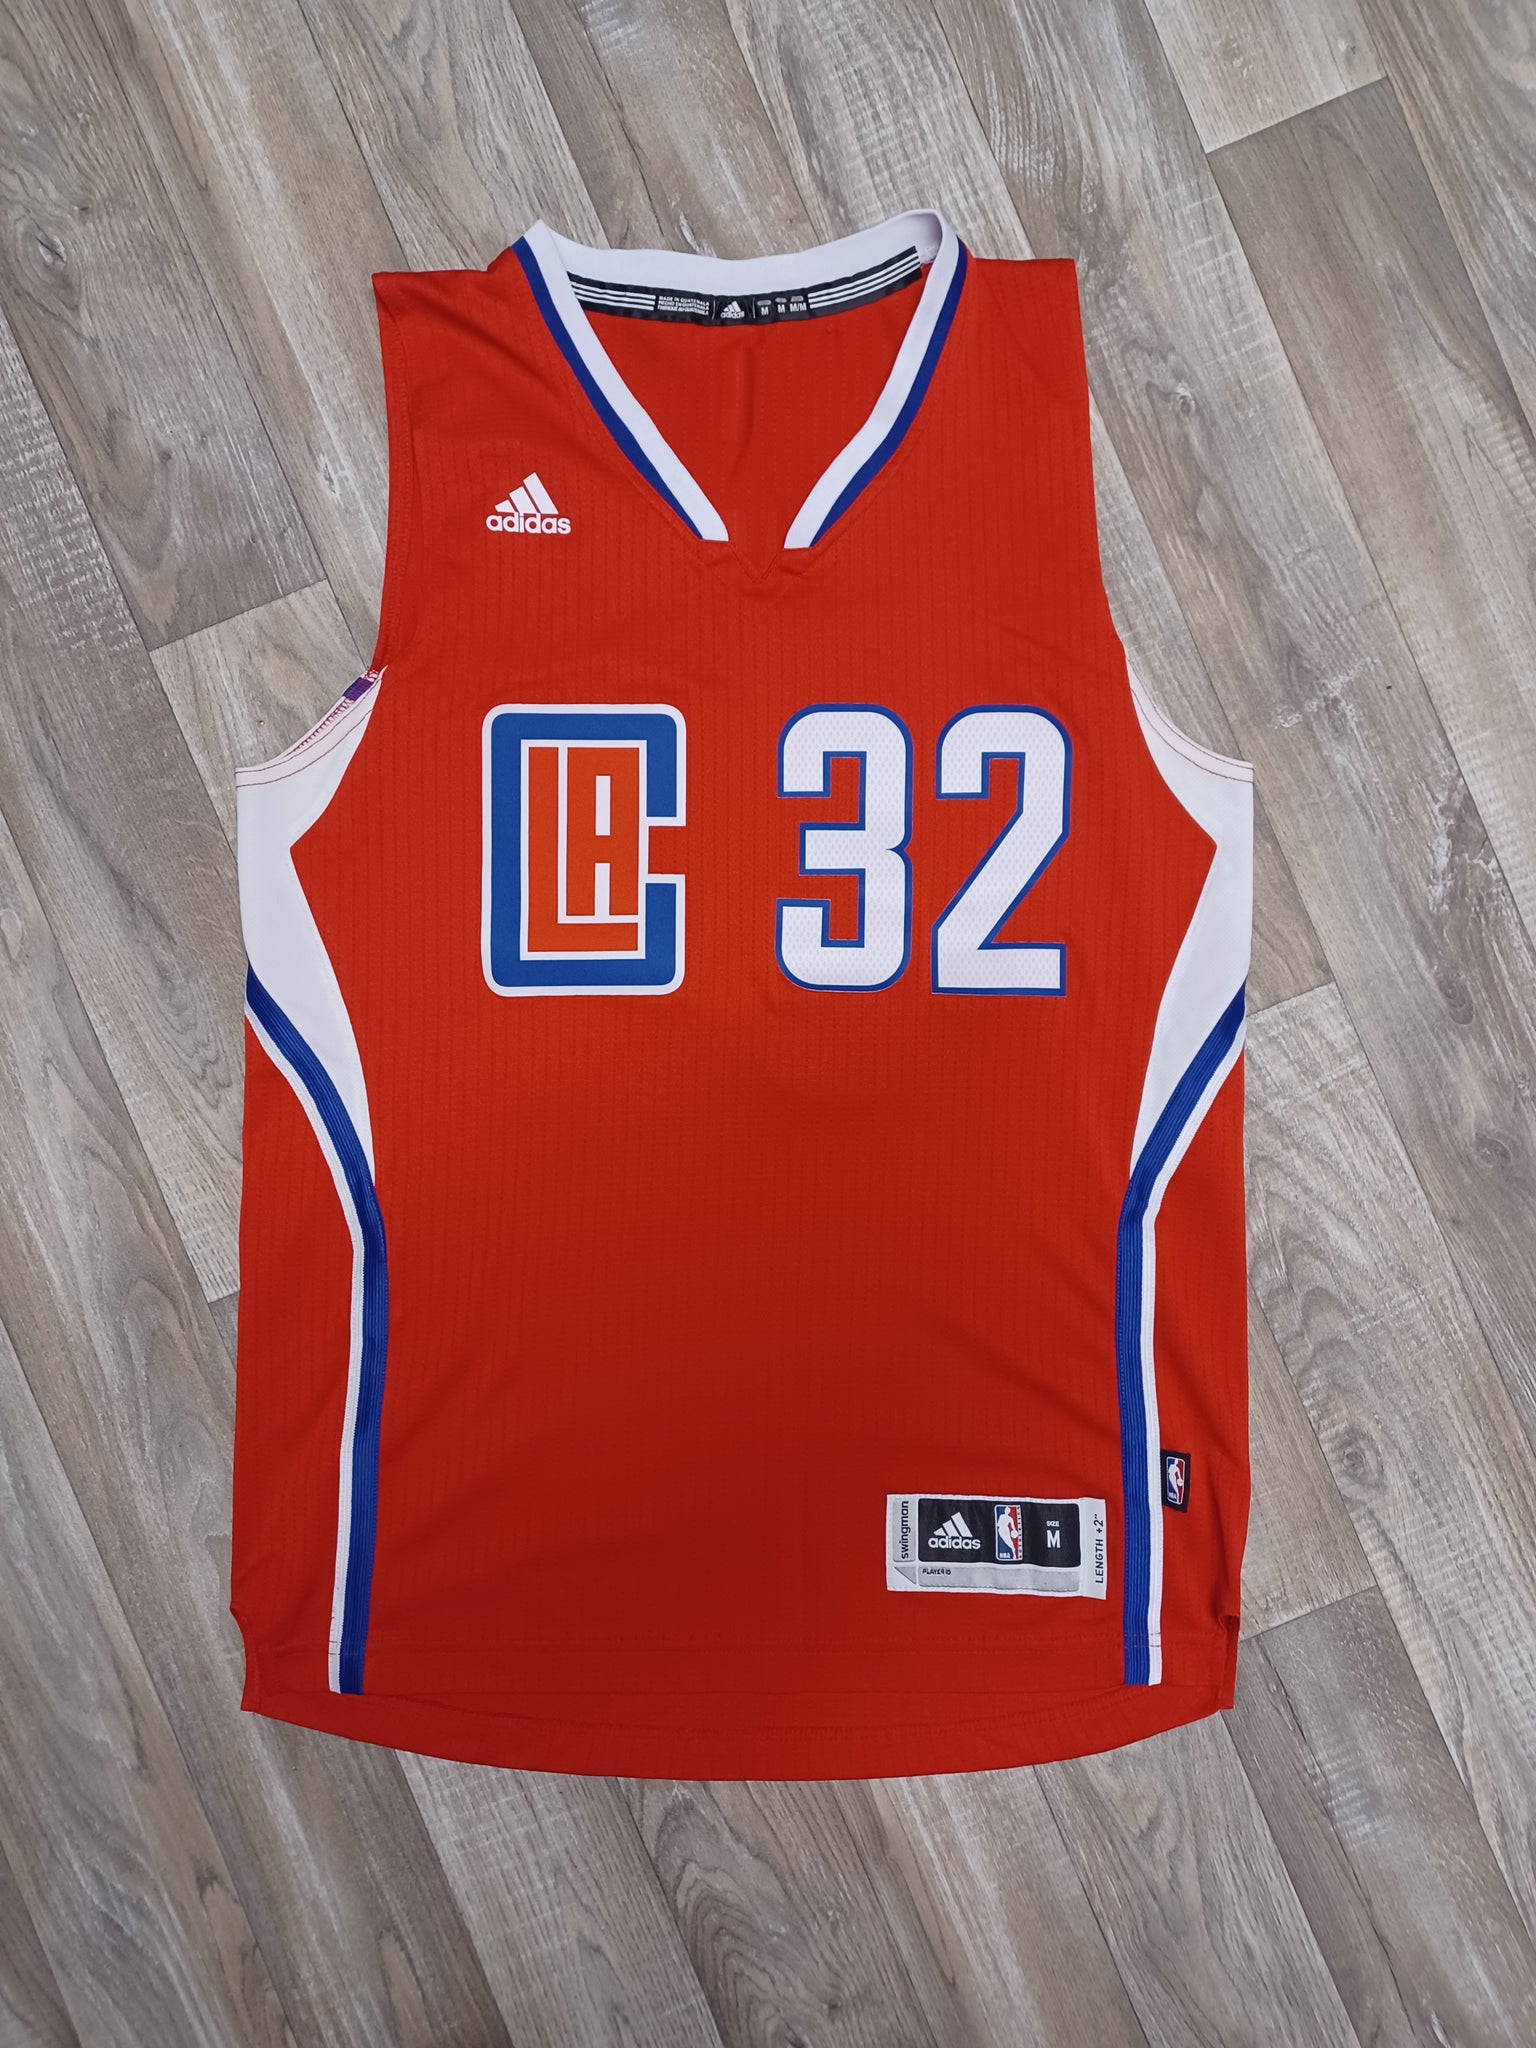 La Clippers Shirt -  UK